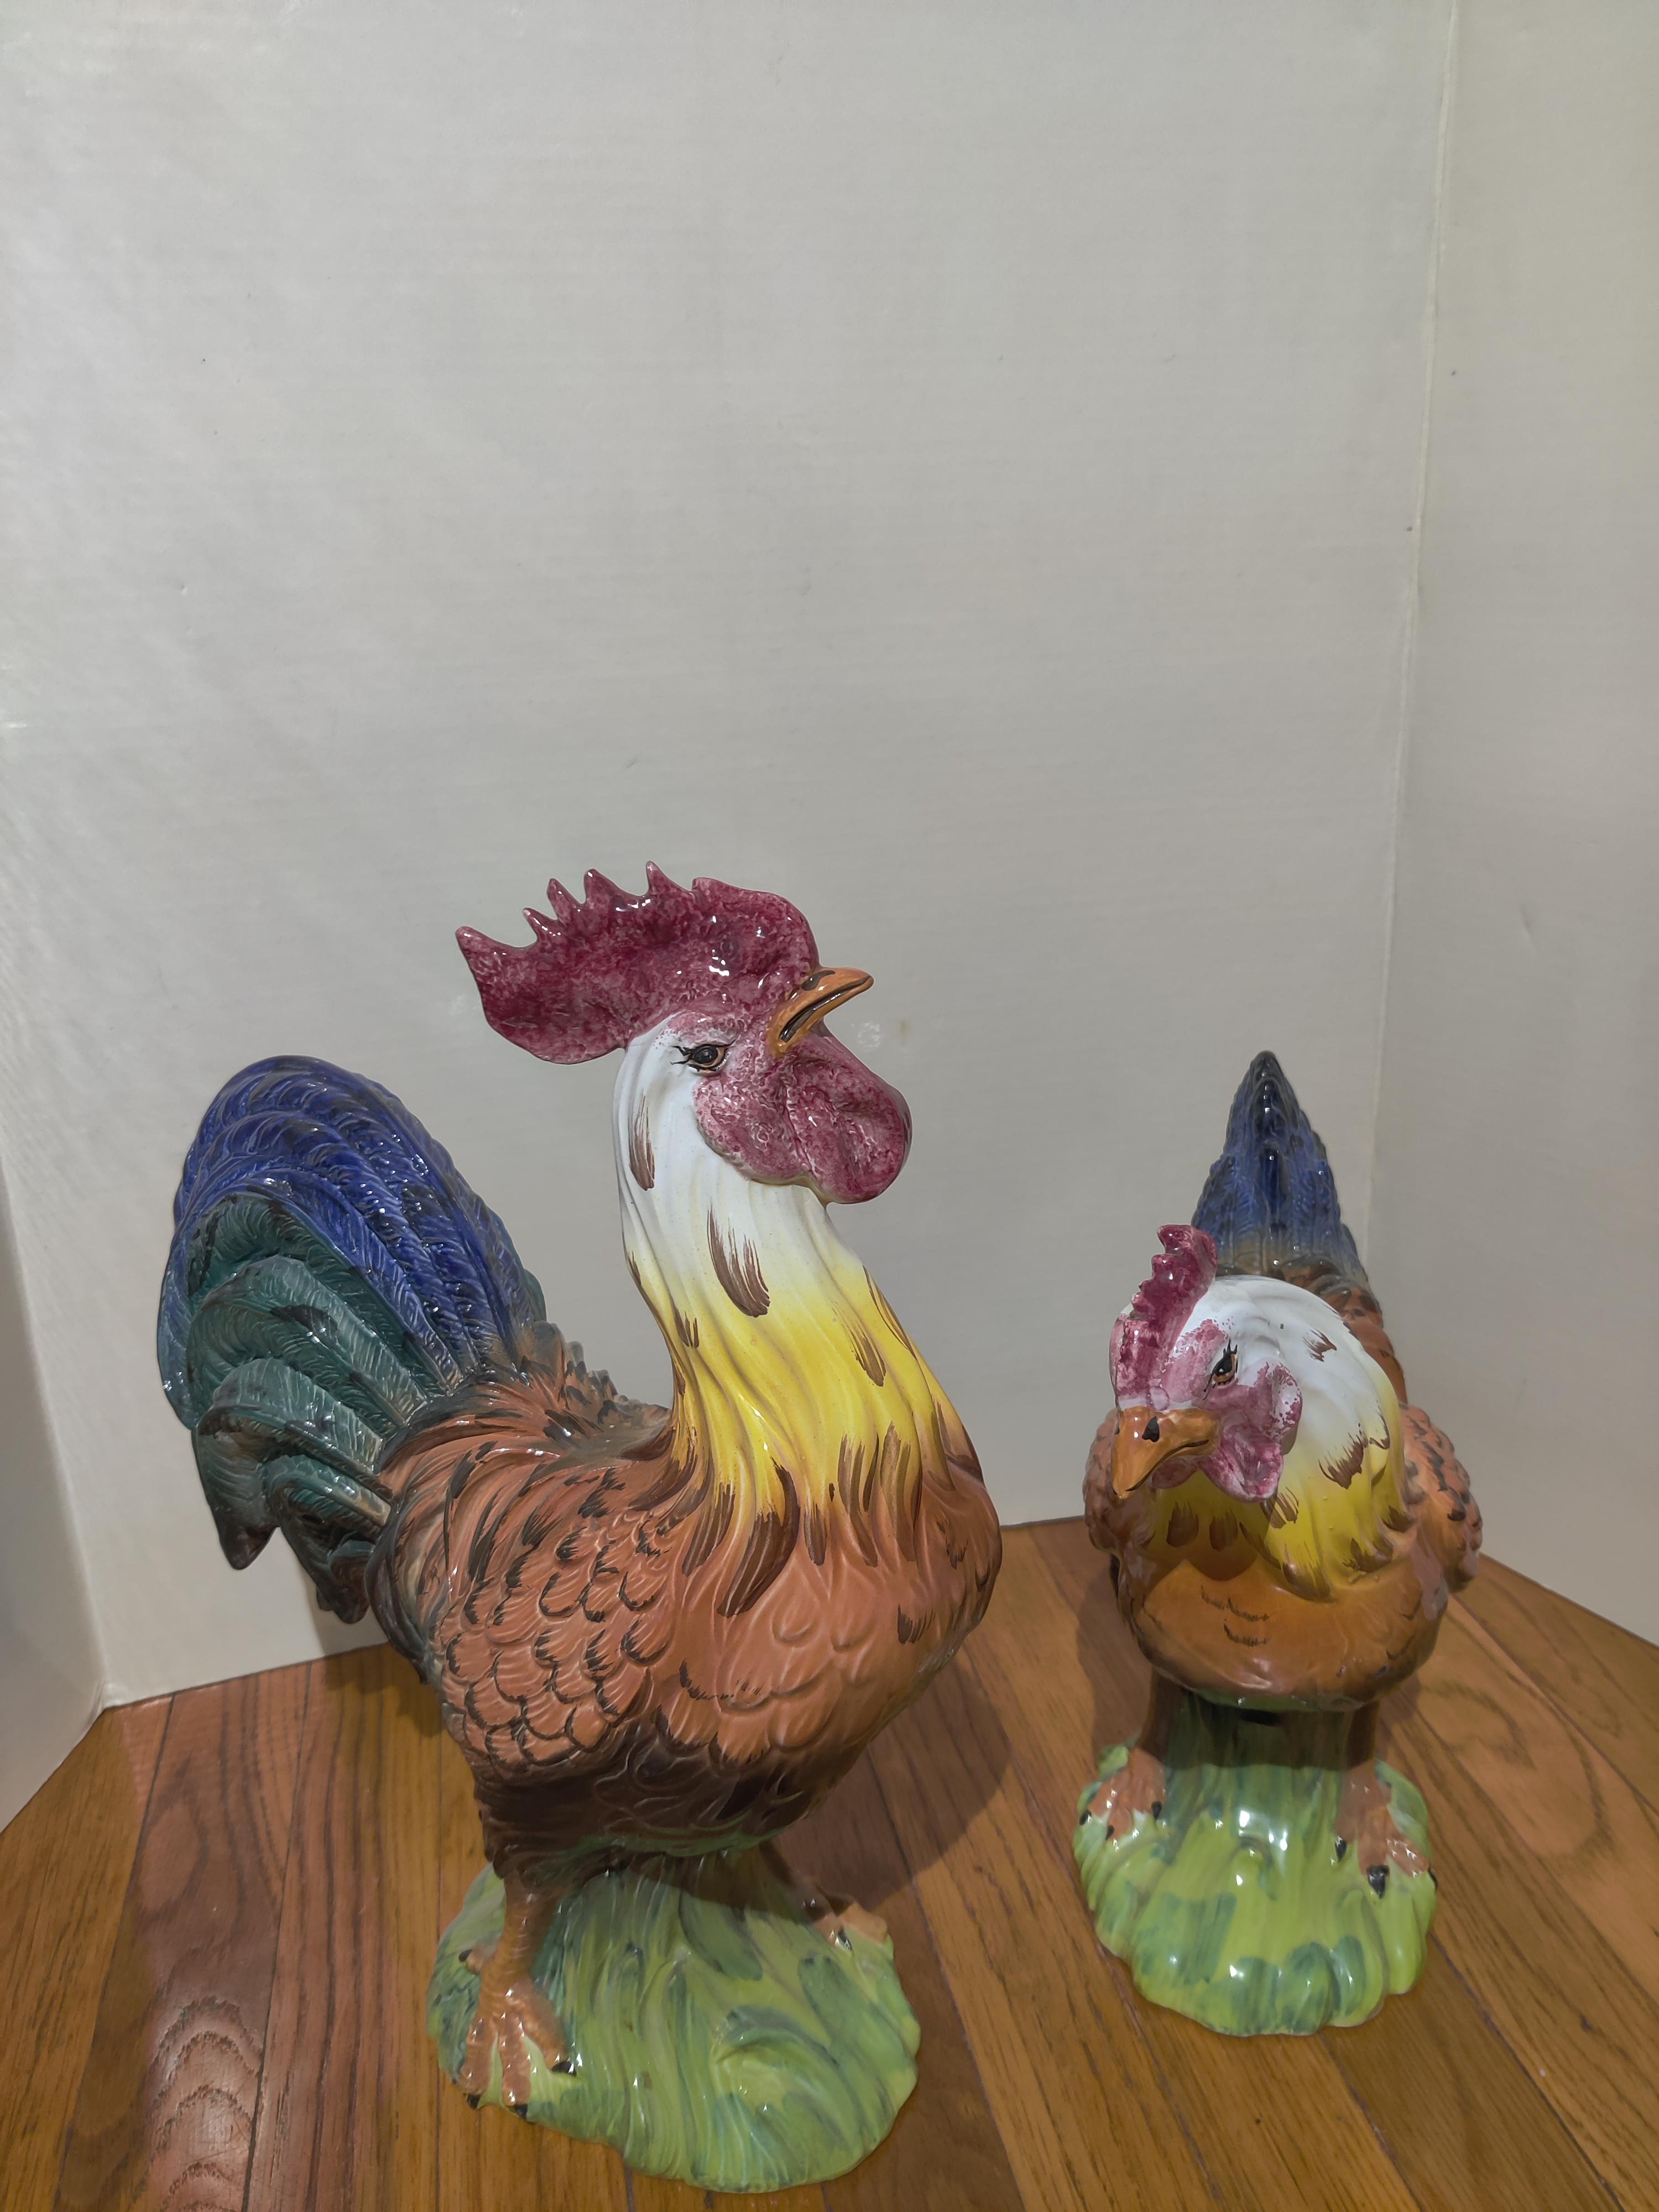 Intrada Hahn und Henne aus Keramik Made in Italy
Maße der Henne 12 H x 11,24 L X 5,5 B
